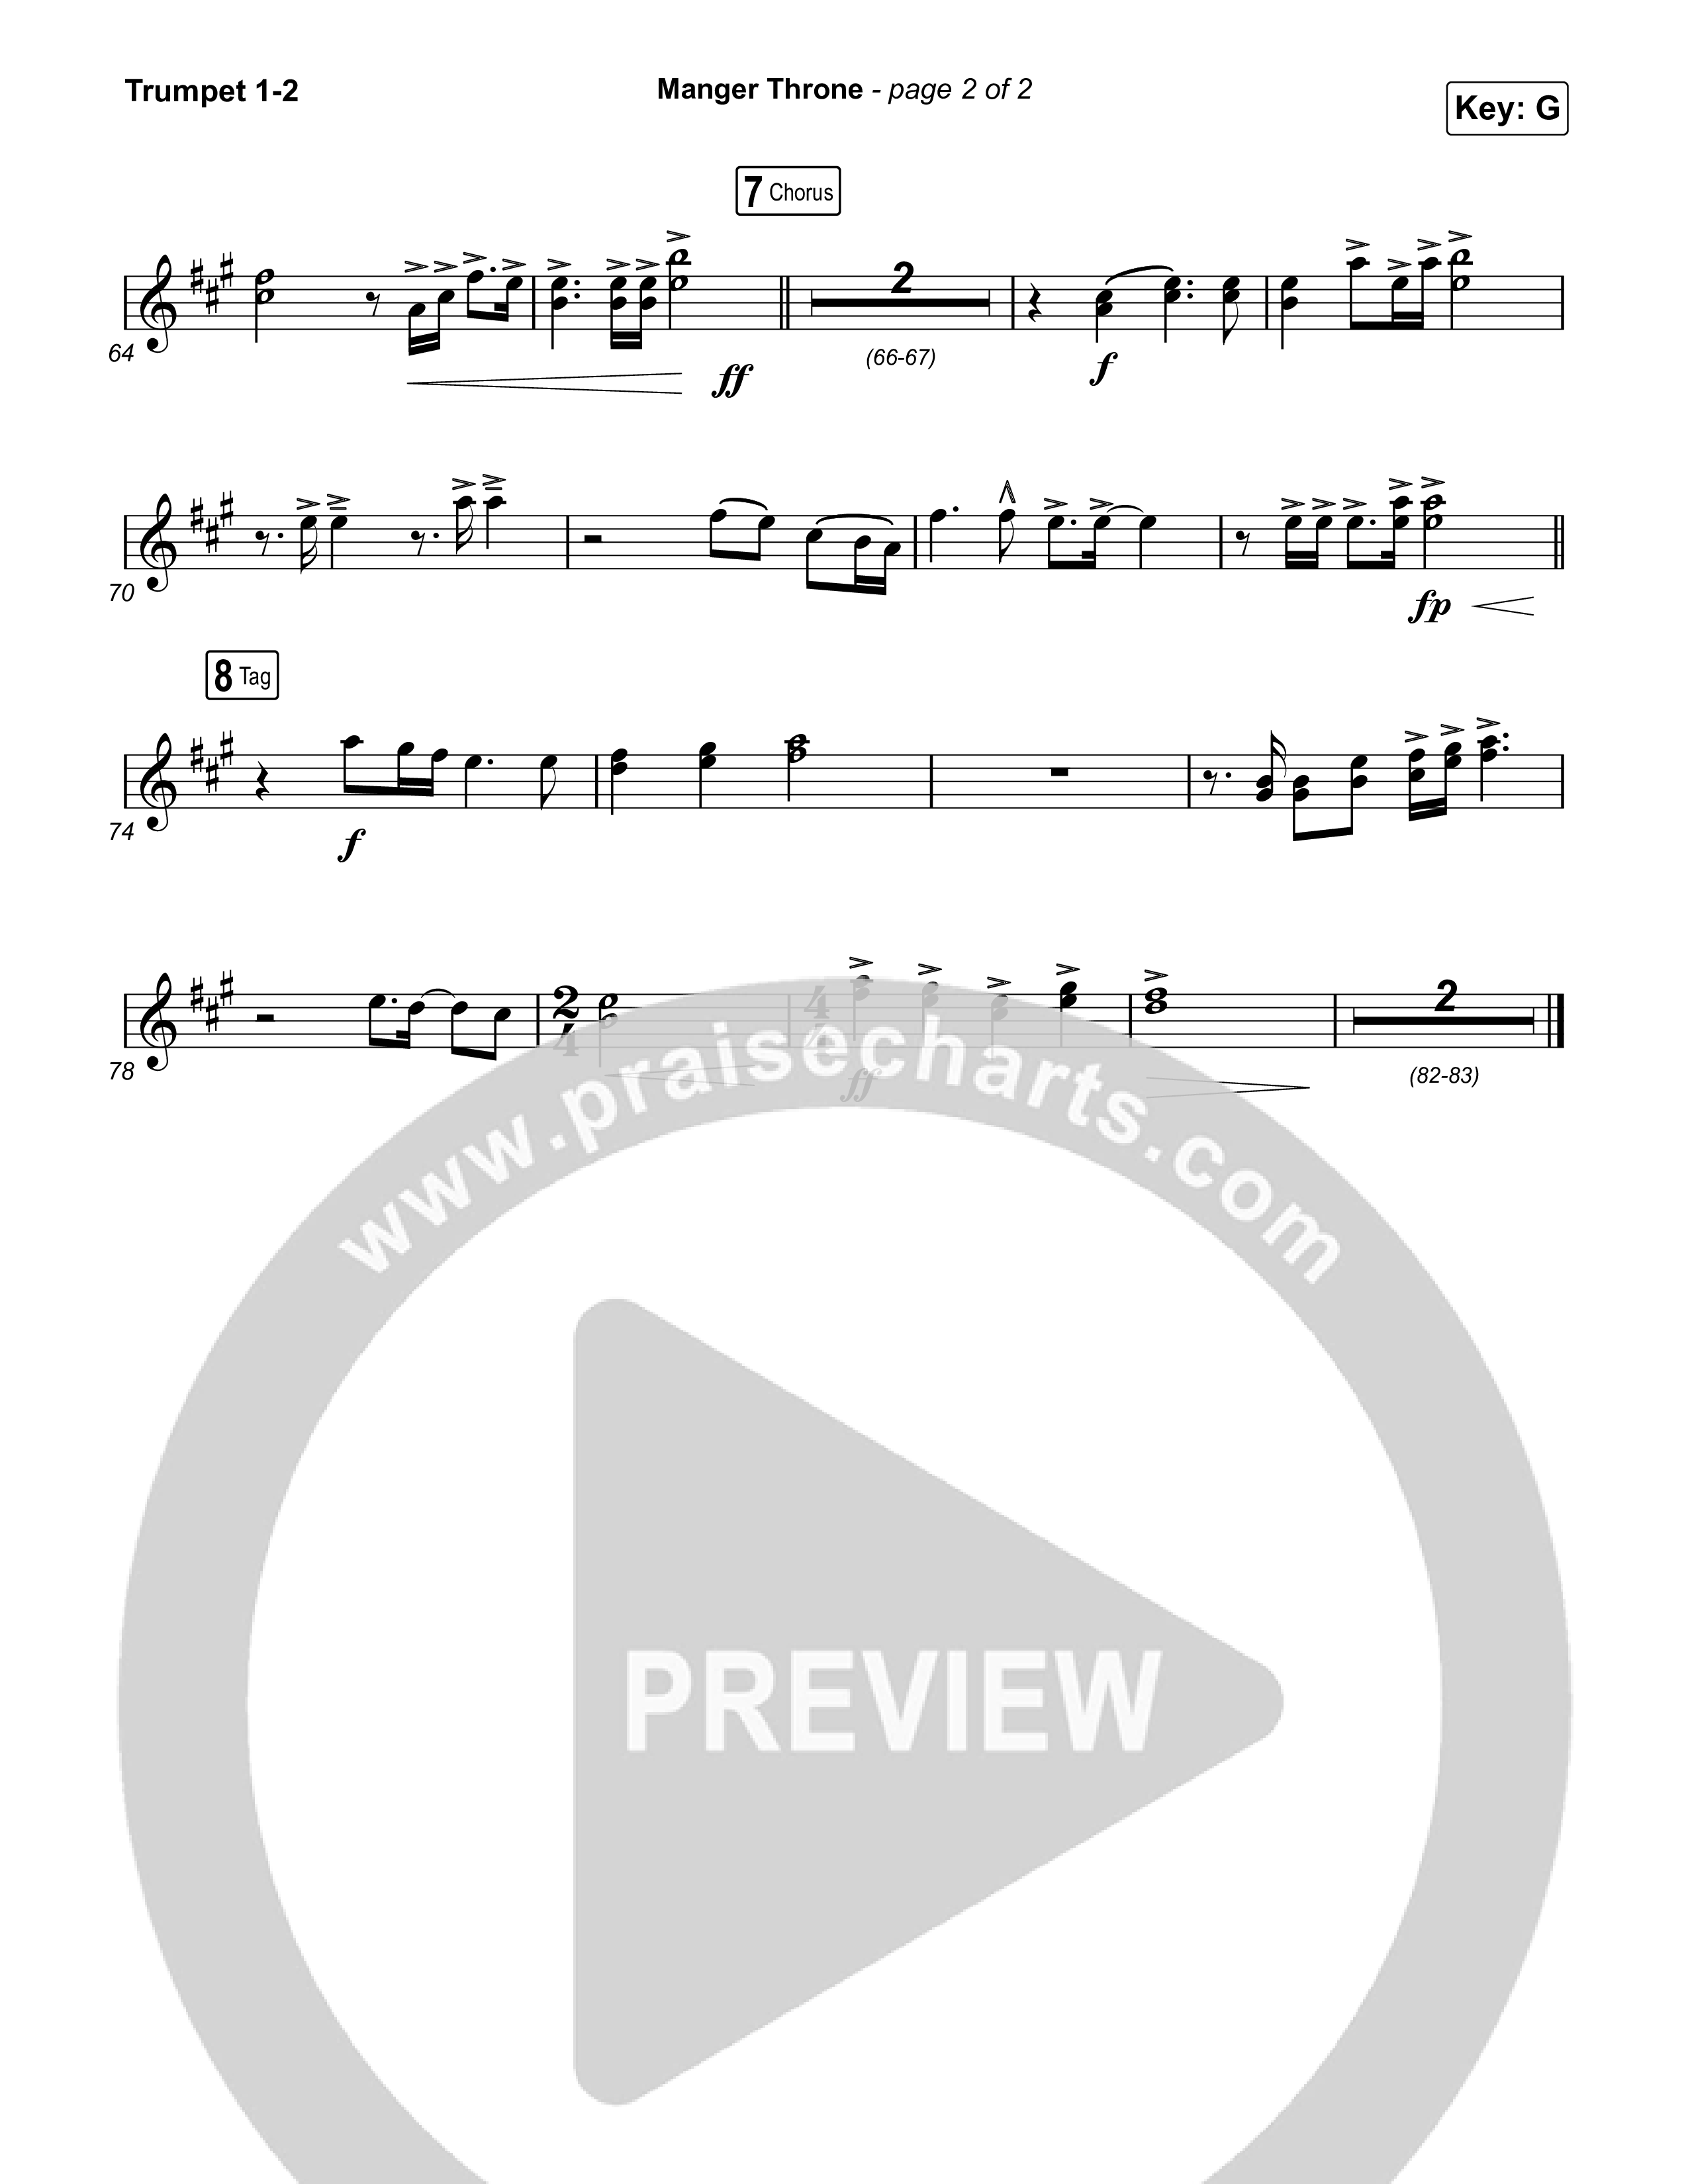 Manger Throne (Choral Anthem SATB) Trumpet 1,2 (Phil Wickham / Arr. Erik Foster)